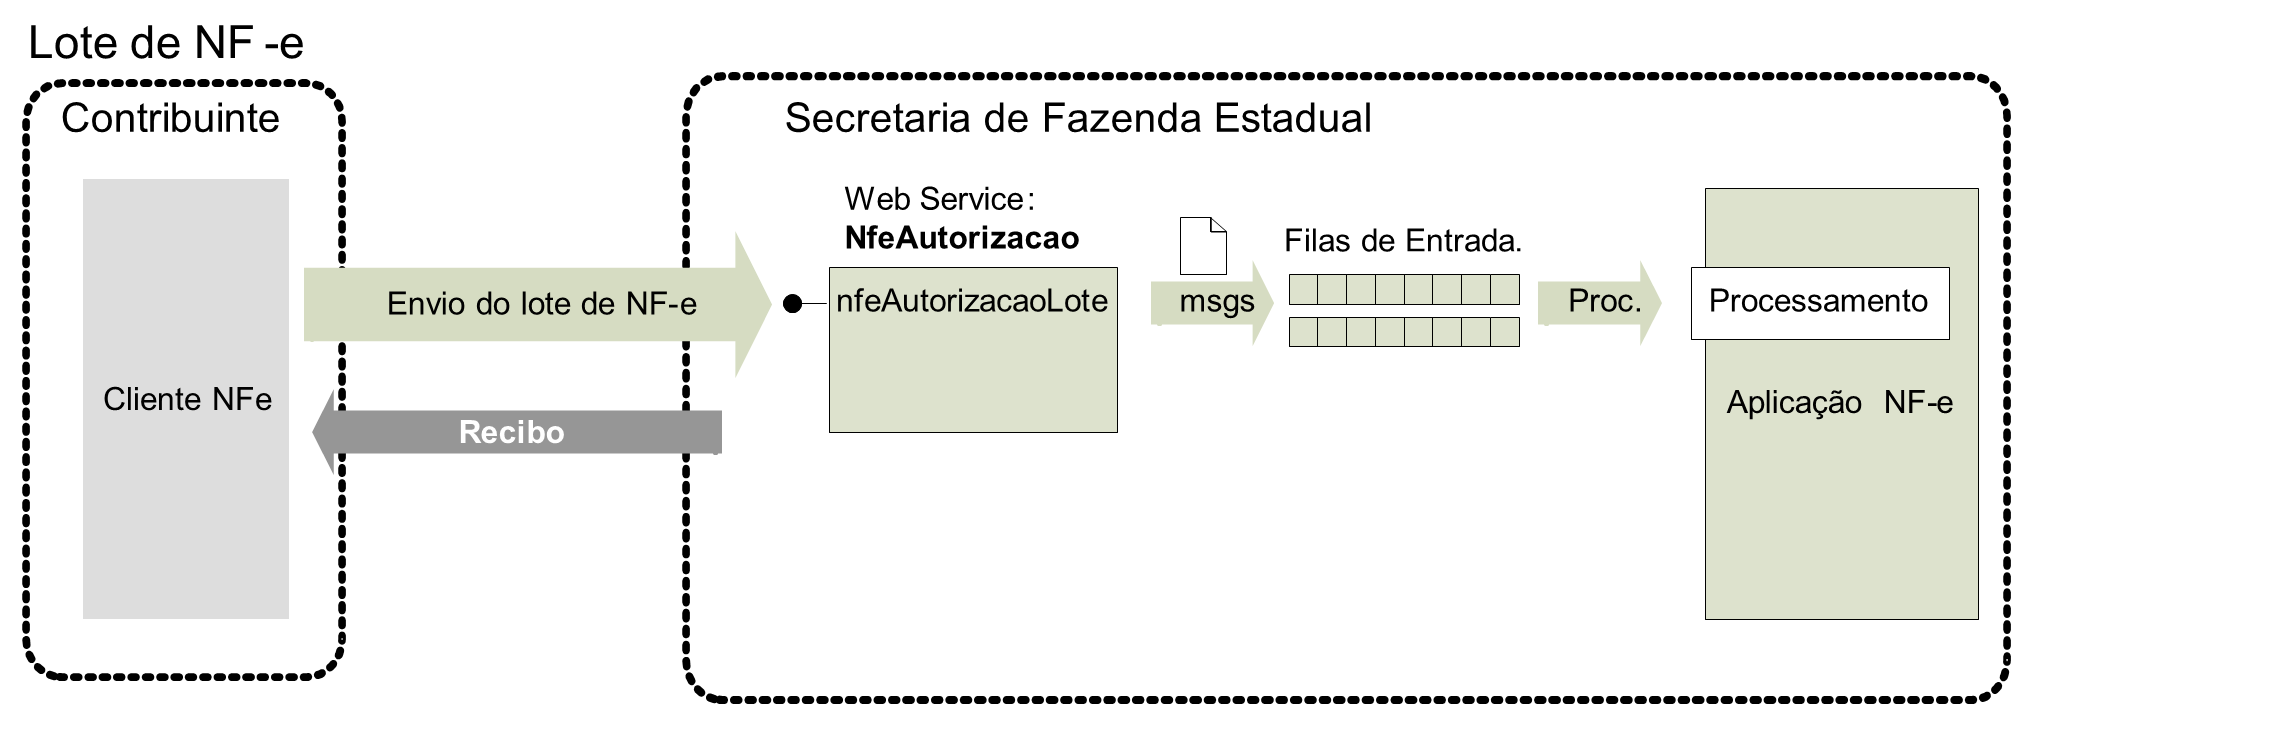 Fluxo do Web Service nfeAutorizacaoLote (Recepção de Lote de NF-e)